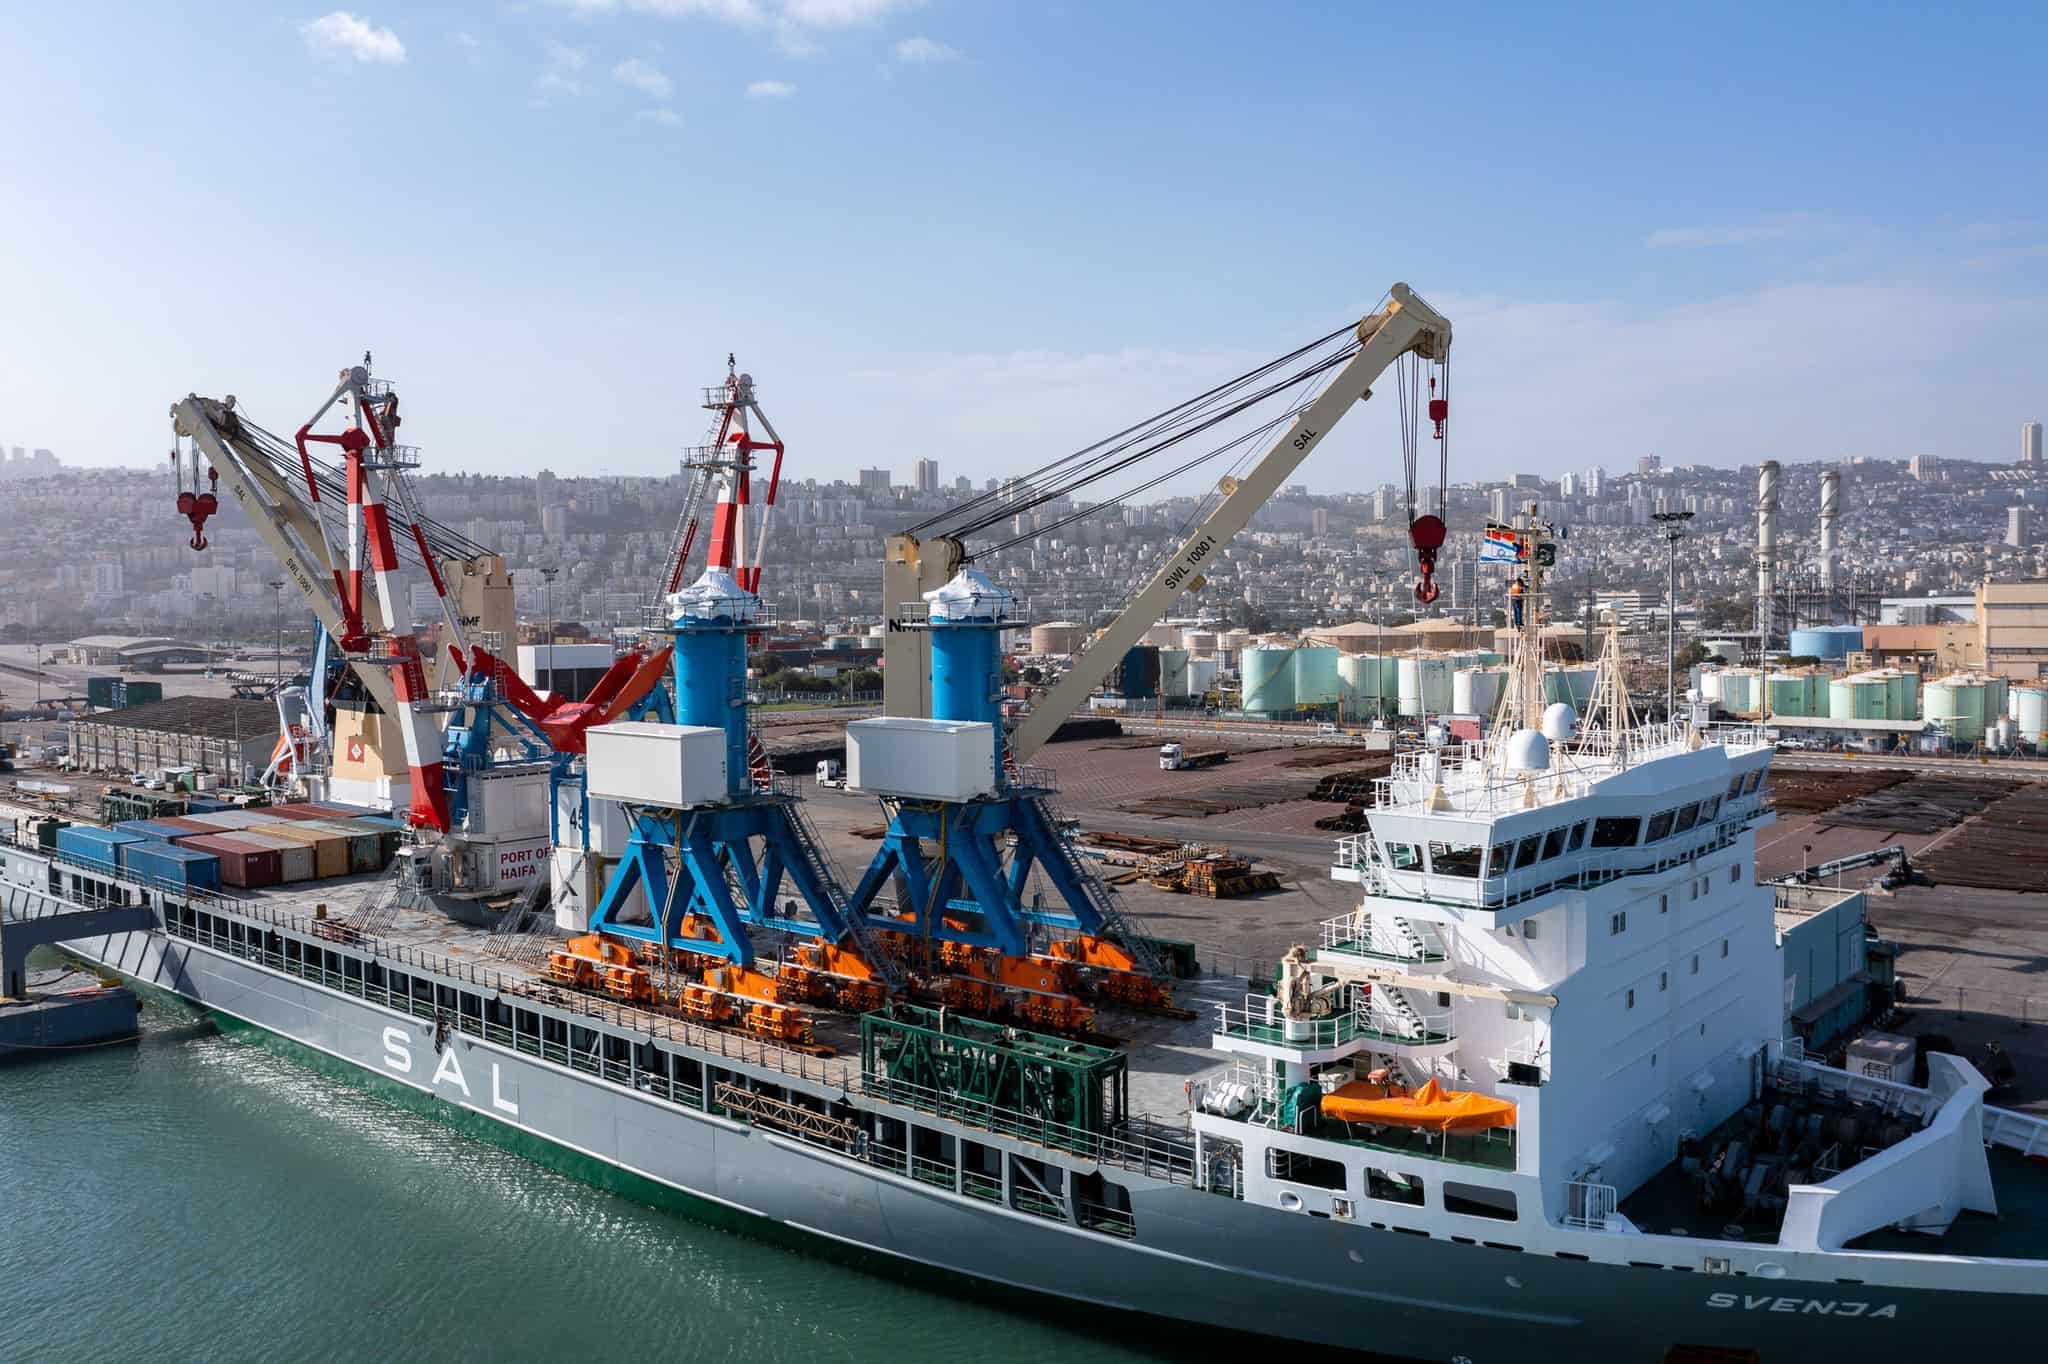 נמל חיפה, צילומי רחפן: גיאודרונס